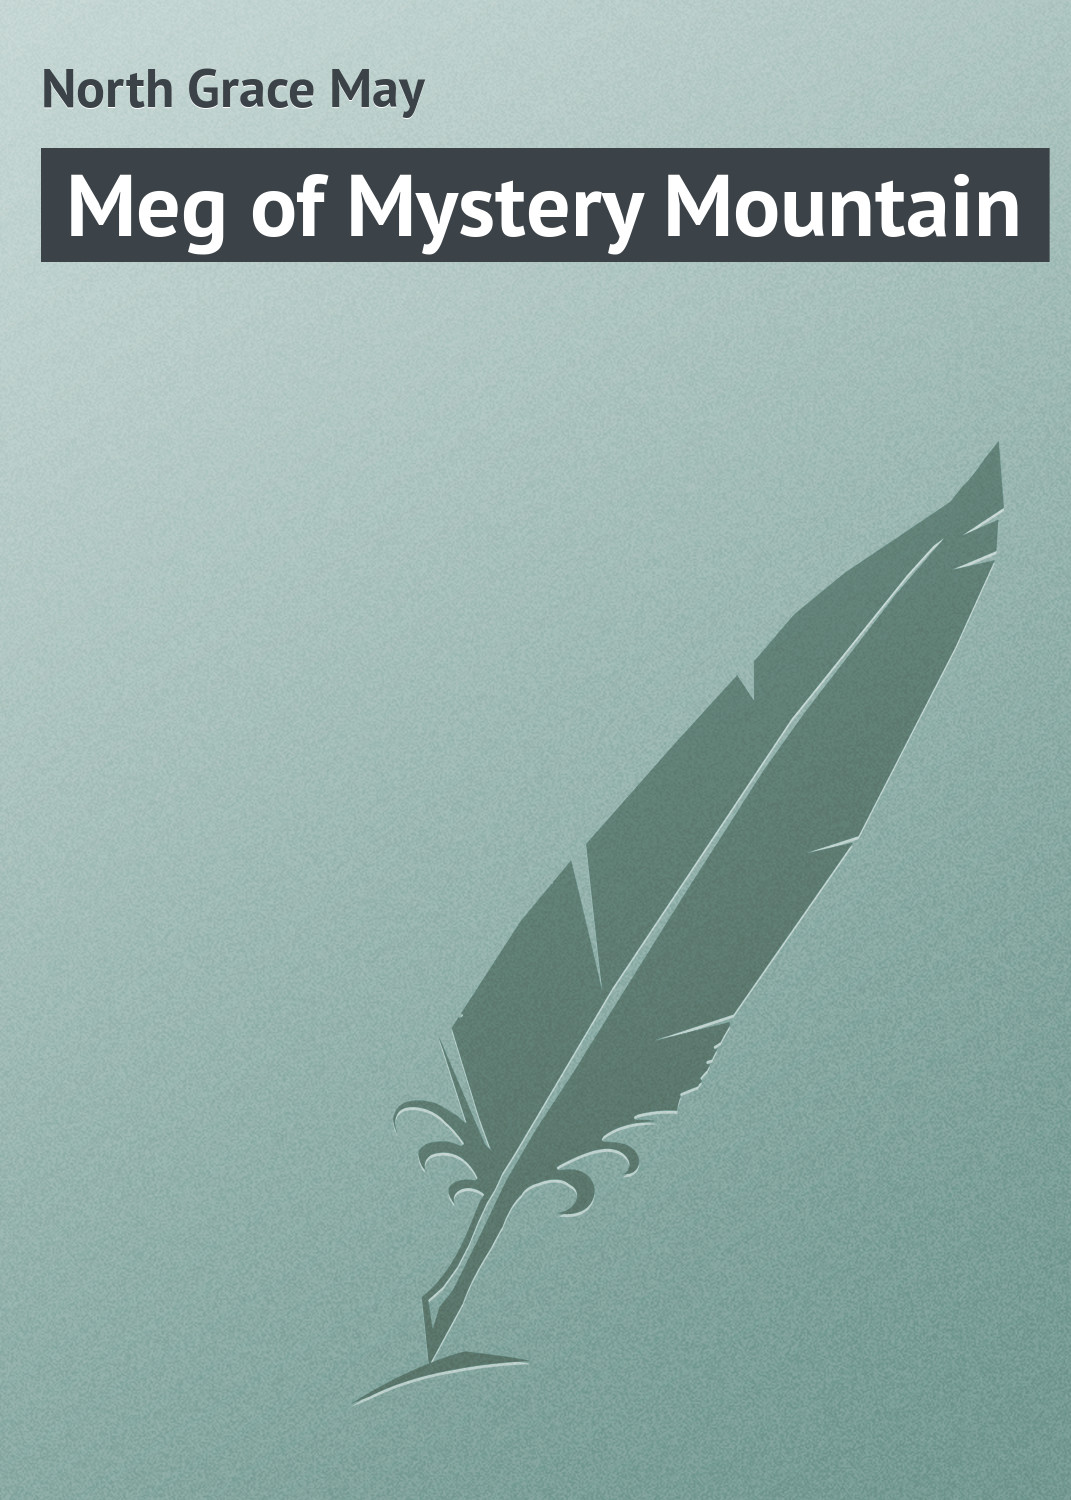 Книга Meg of Mystery Mountain из серии , созданная Grace North, может относится к жанру Классические детективы, Зарубежные детективы, Зарубежная классика. Стоимость электронной книги Meg of Mystery Mountain с идентификатором 23155315 составляет 5.99 руб.